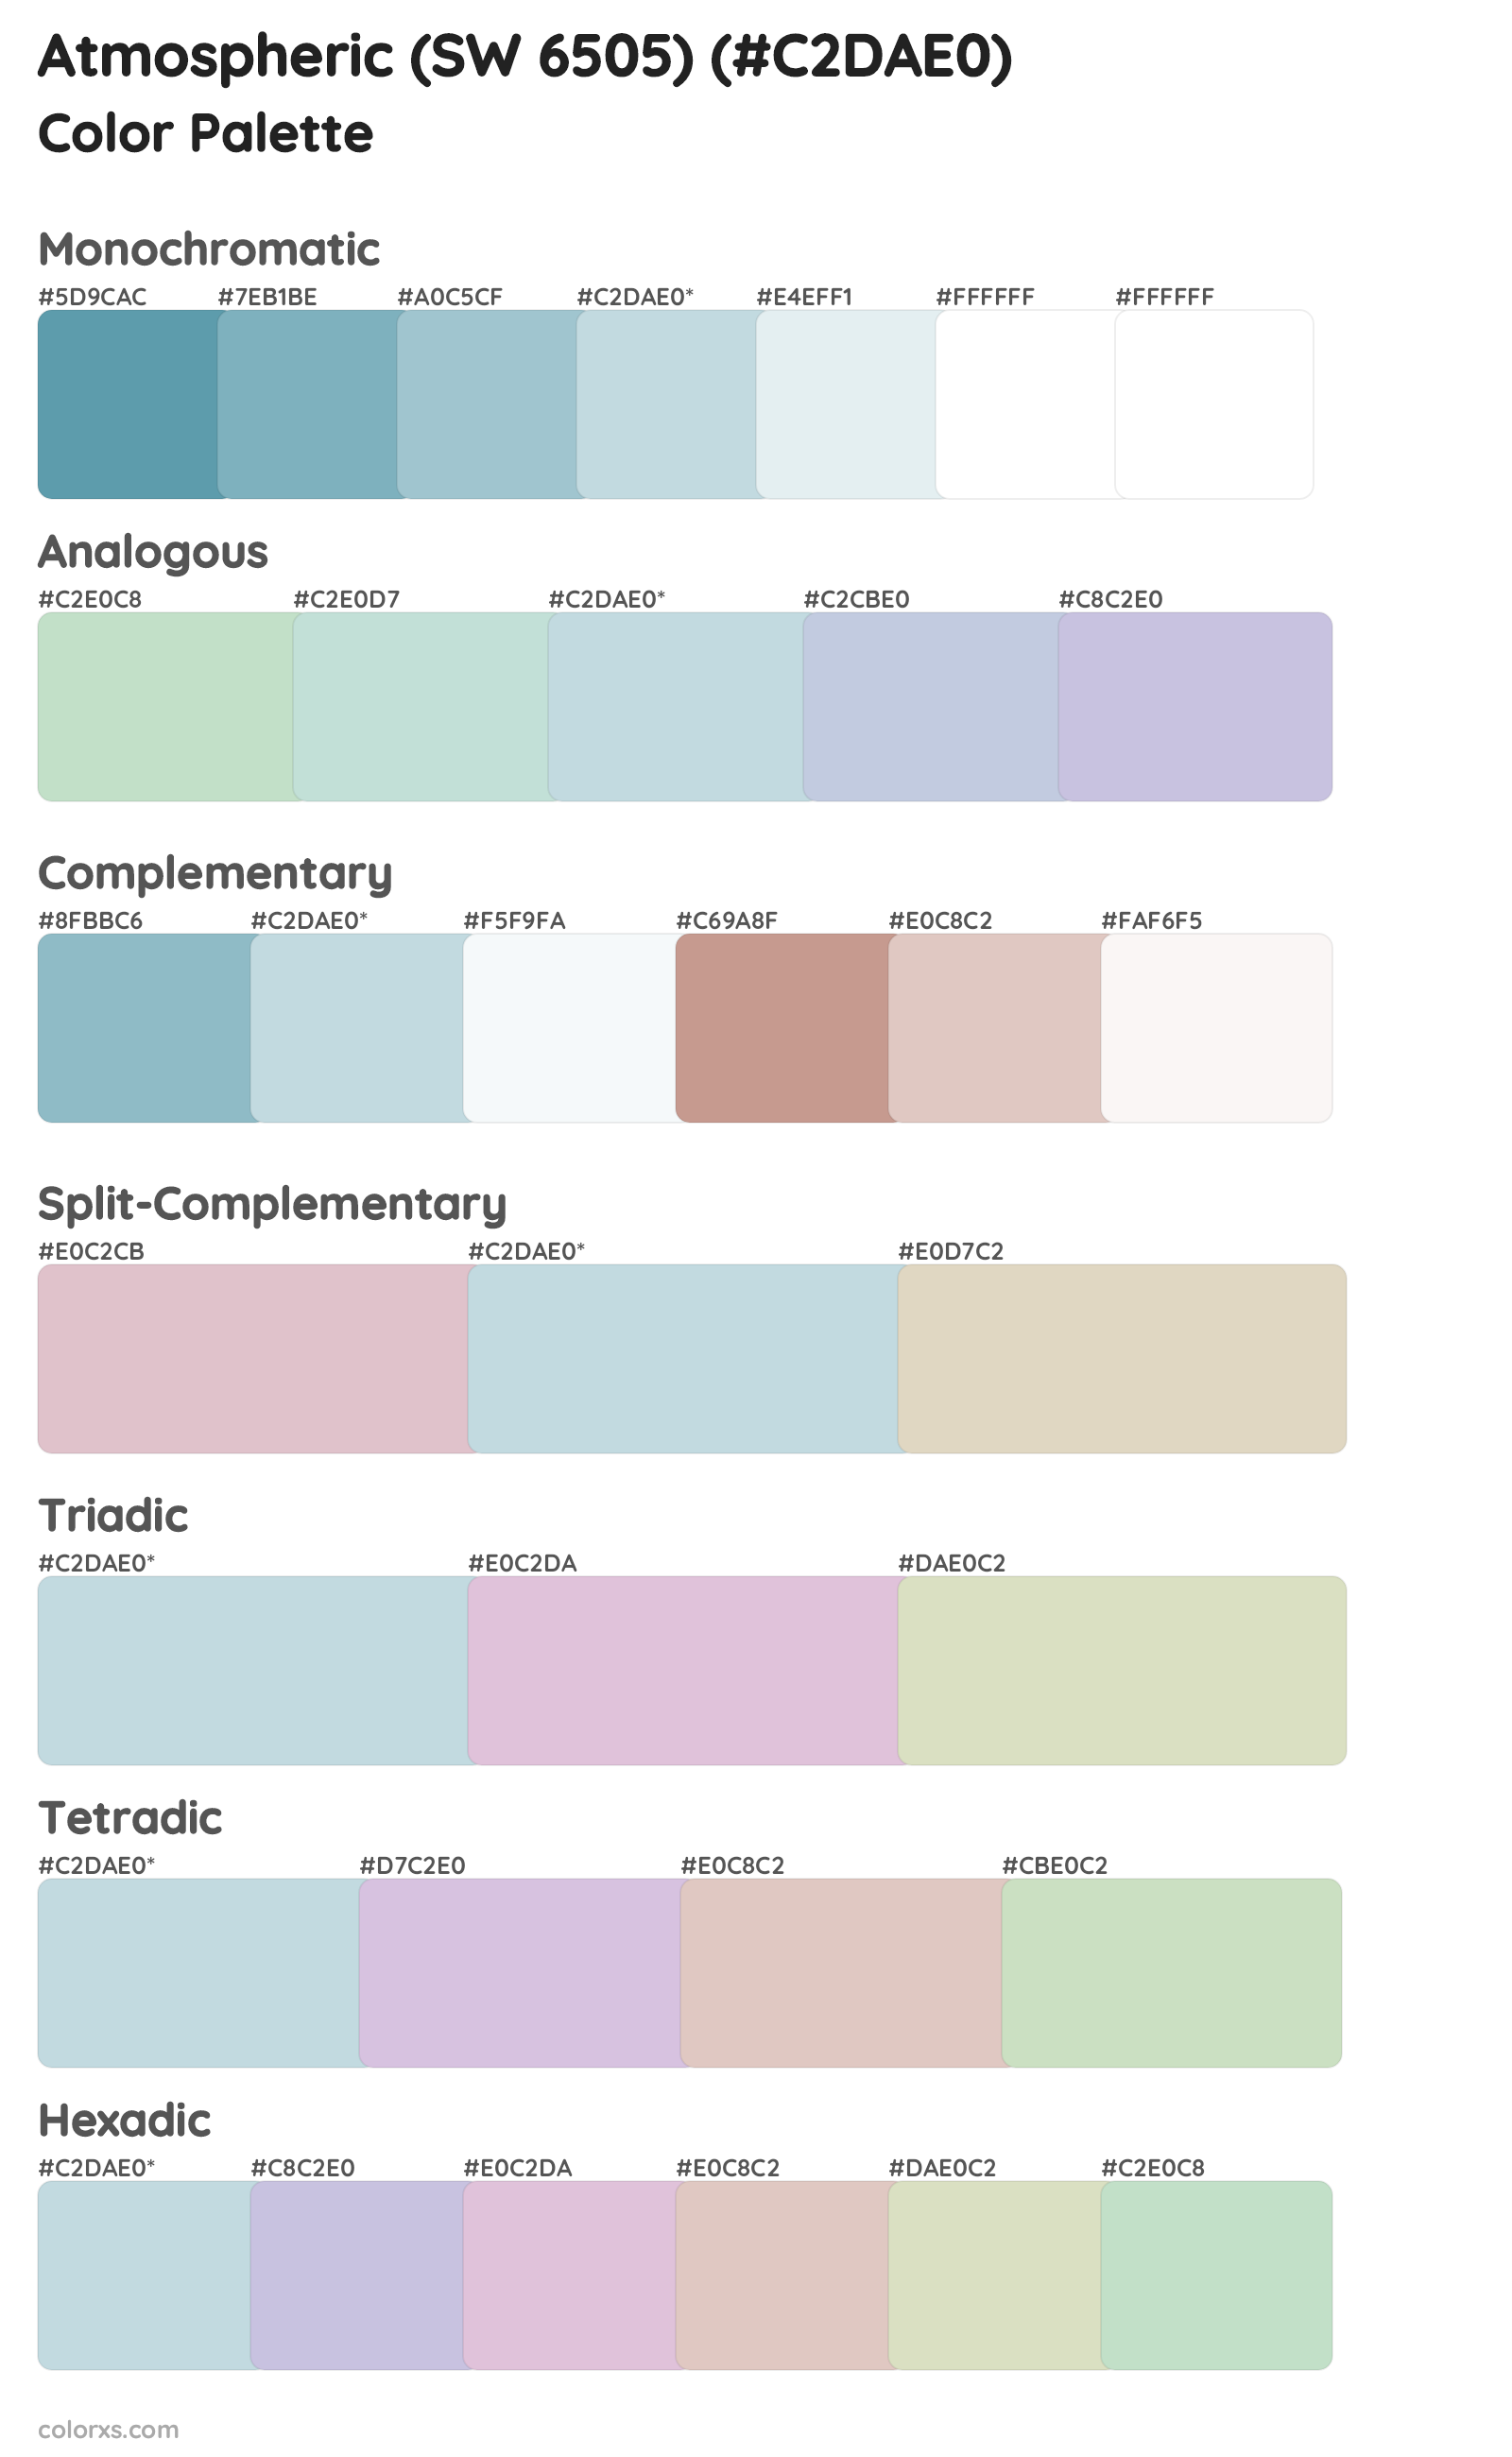 Atmospheric (SW 6505) Color Scheme Palettes